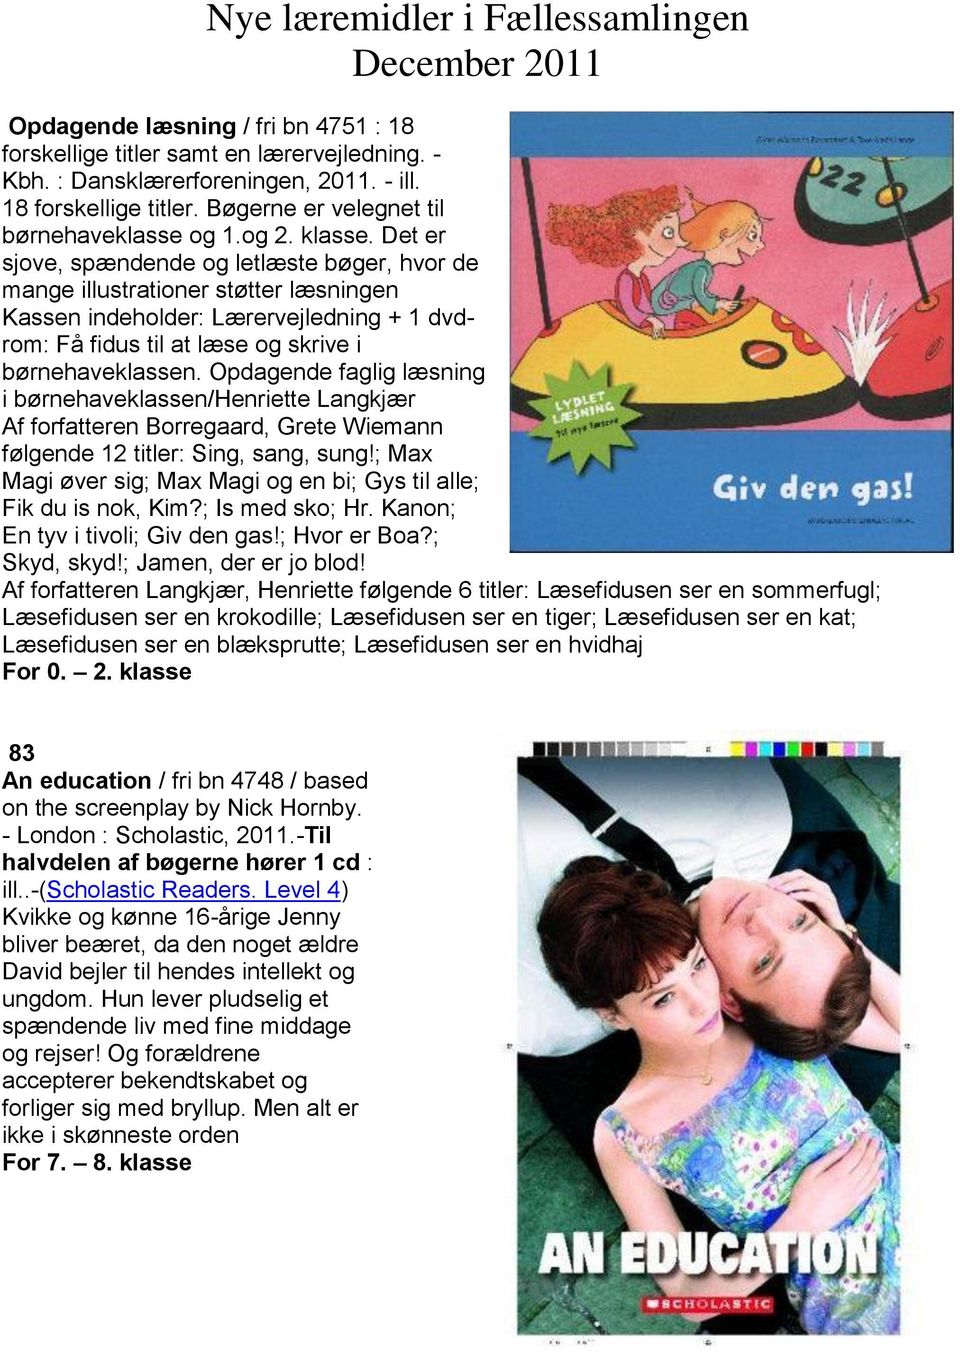 Opdagende faglig læsning i børnehaveklassen/henriette Langkjær Af forfatteren Borregaard, Grete Wiemann følgende 12 titler: Sing, sang, sung!